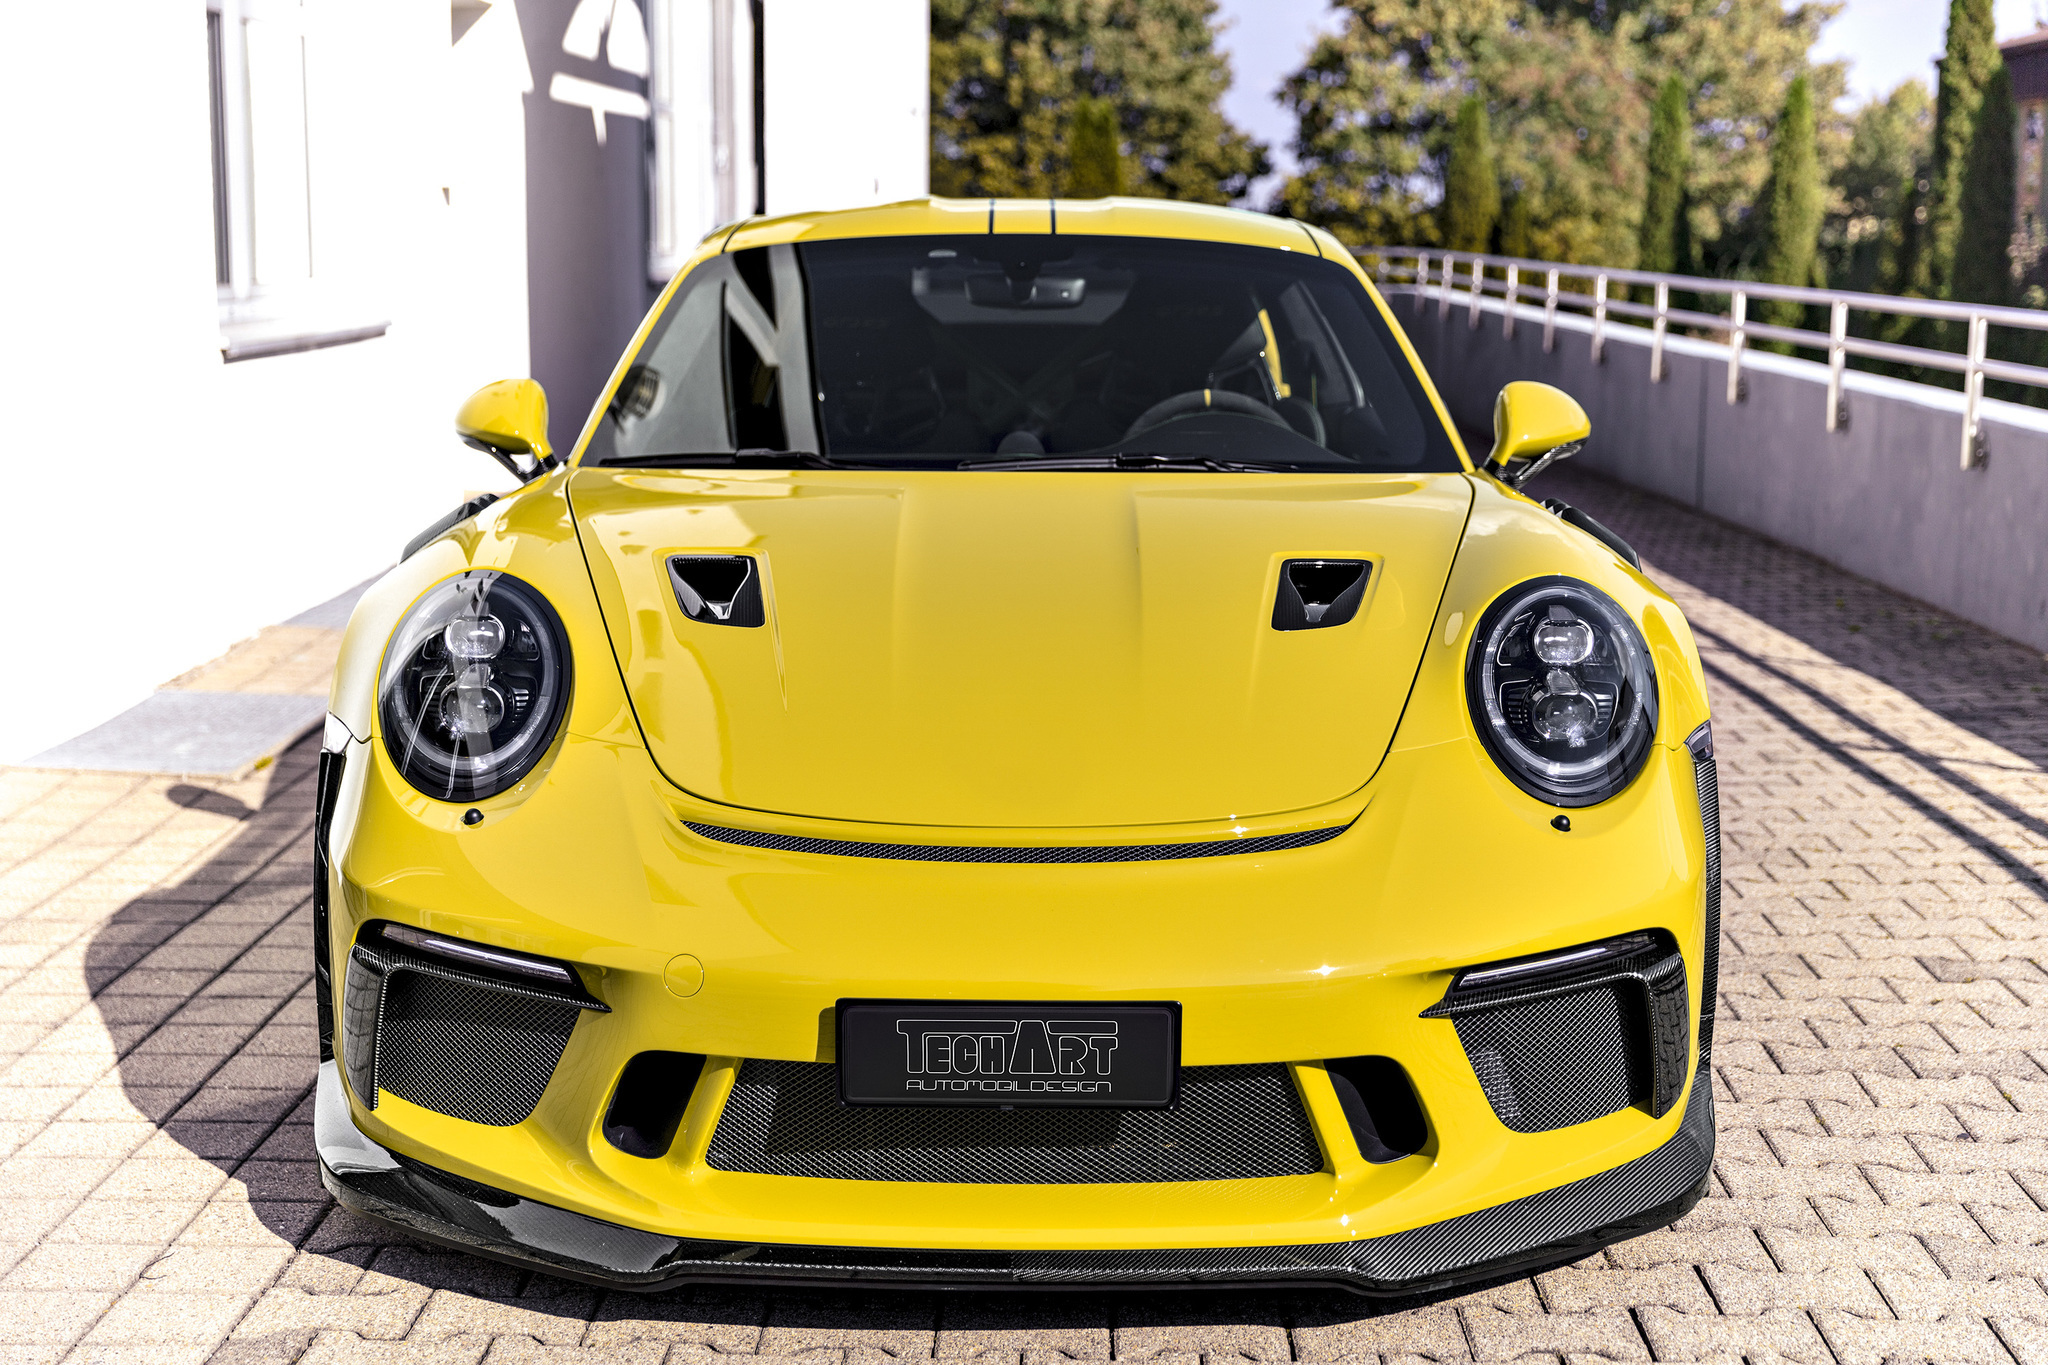 Techart Carbon body kit for Porsche 911 GT3 new model